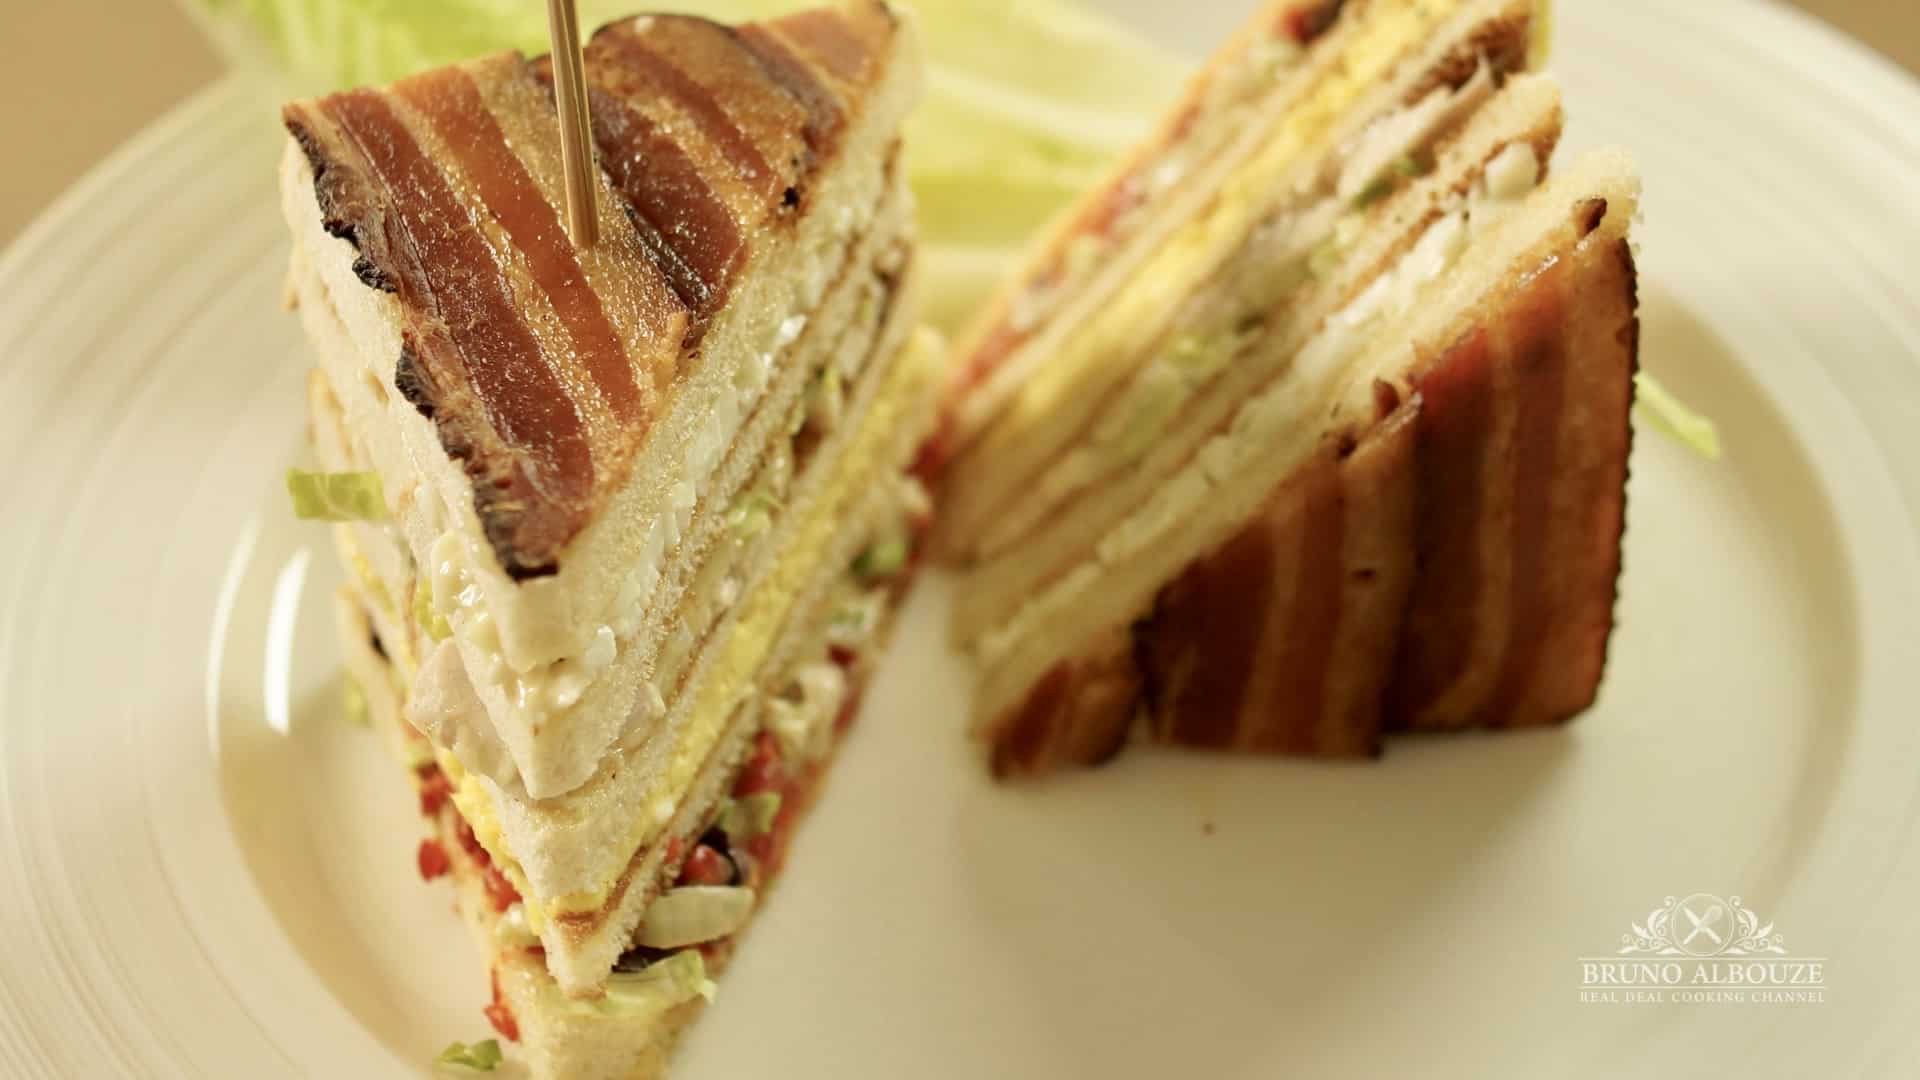 Bruno Albouze Club Sandwich